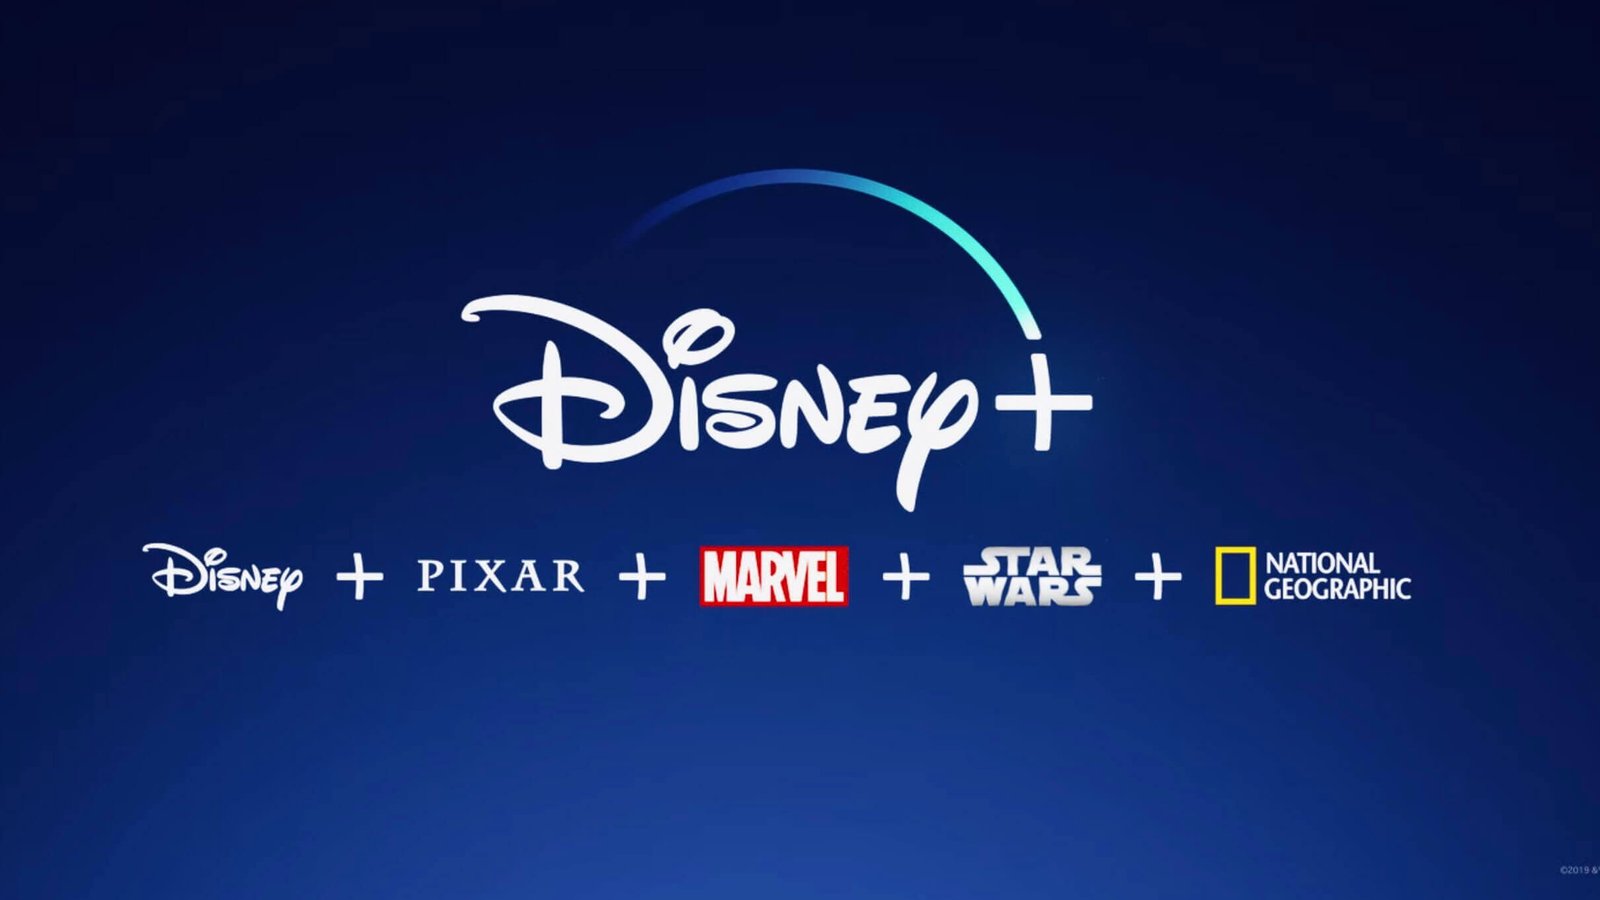 News November 11, 2018Kshitij Nagdeote Disney Will Launch ‘Disney+’ Streaming Service In 2019